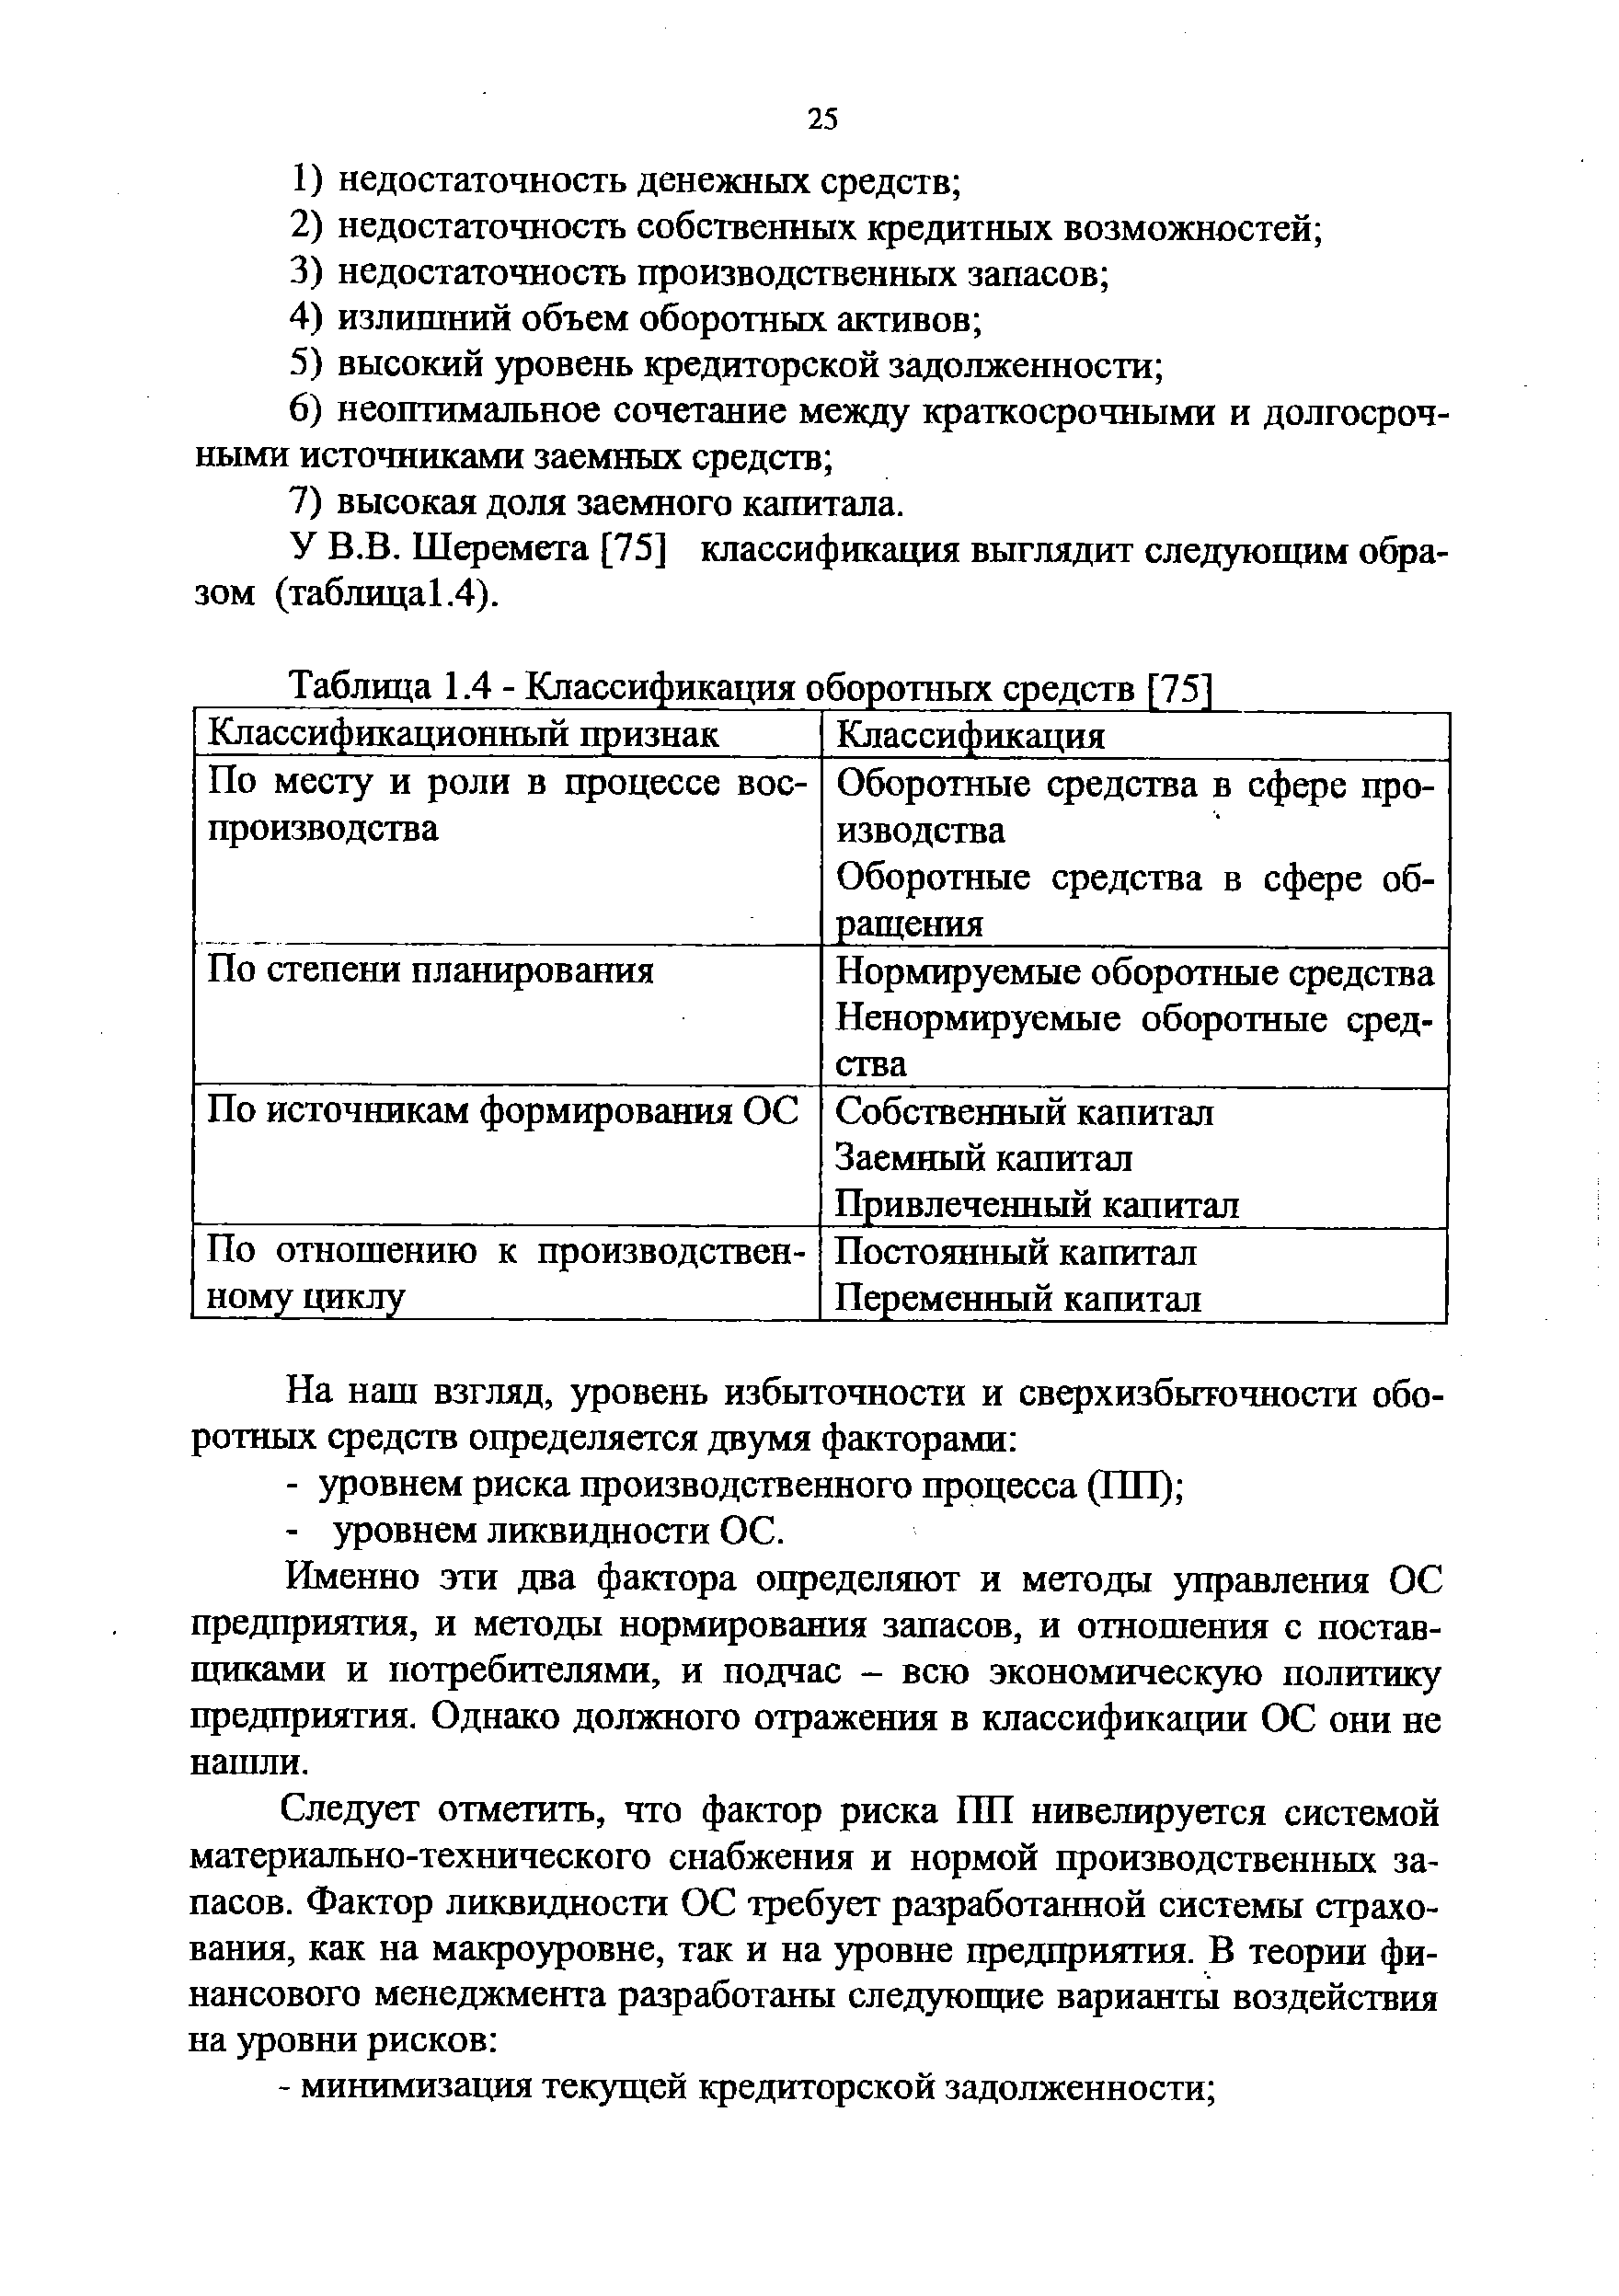 Таблица 1.4 - Классификация оборотных средств [75]
